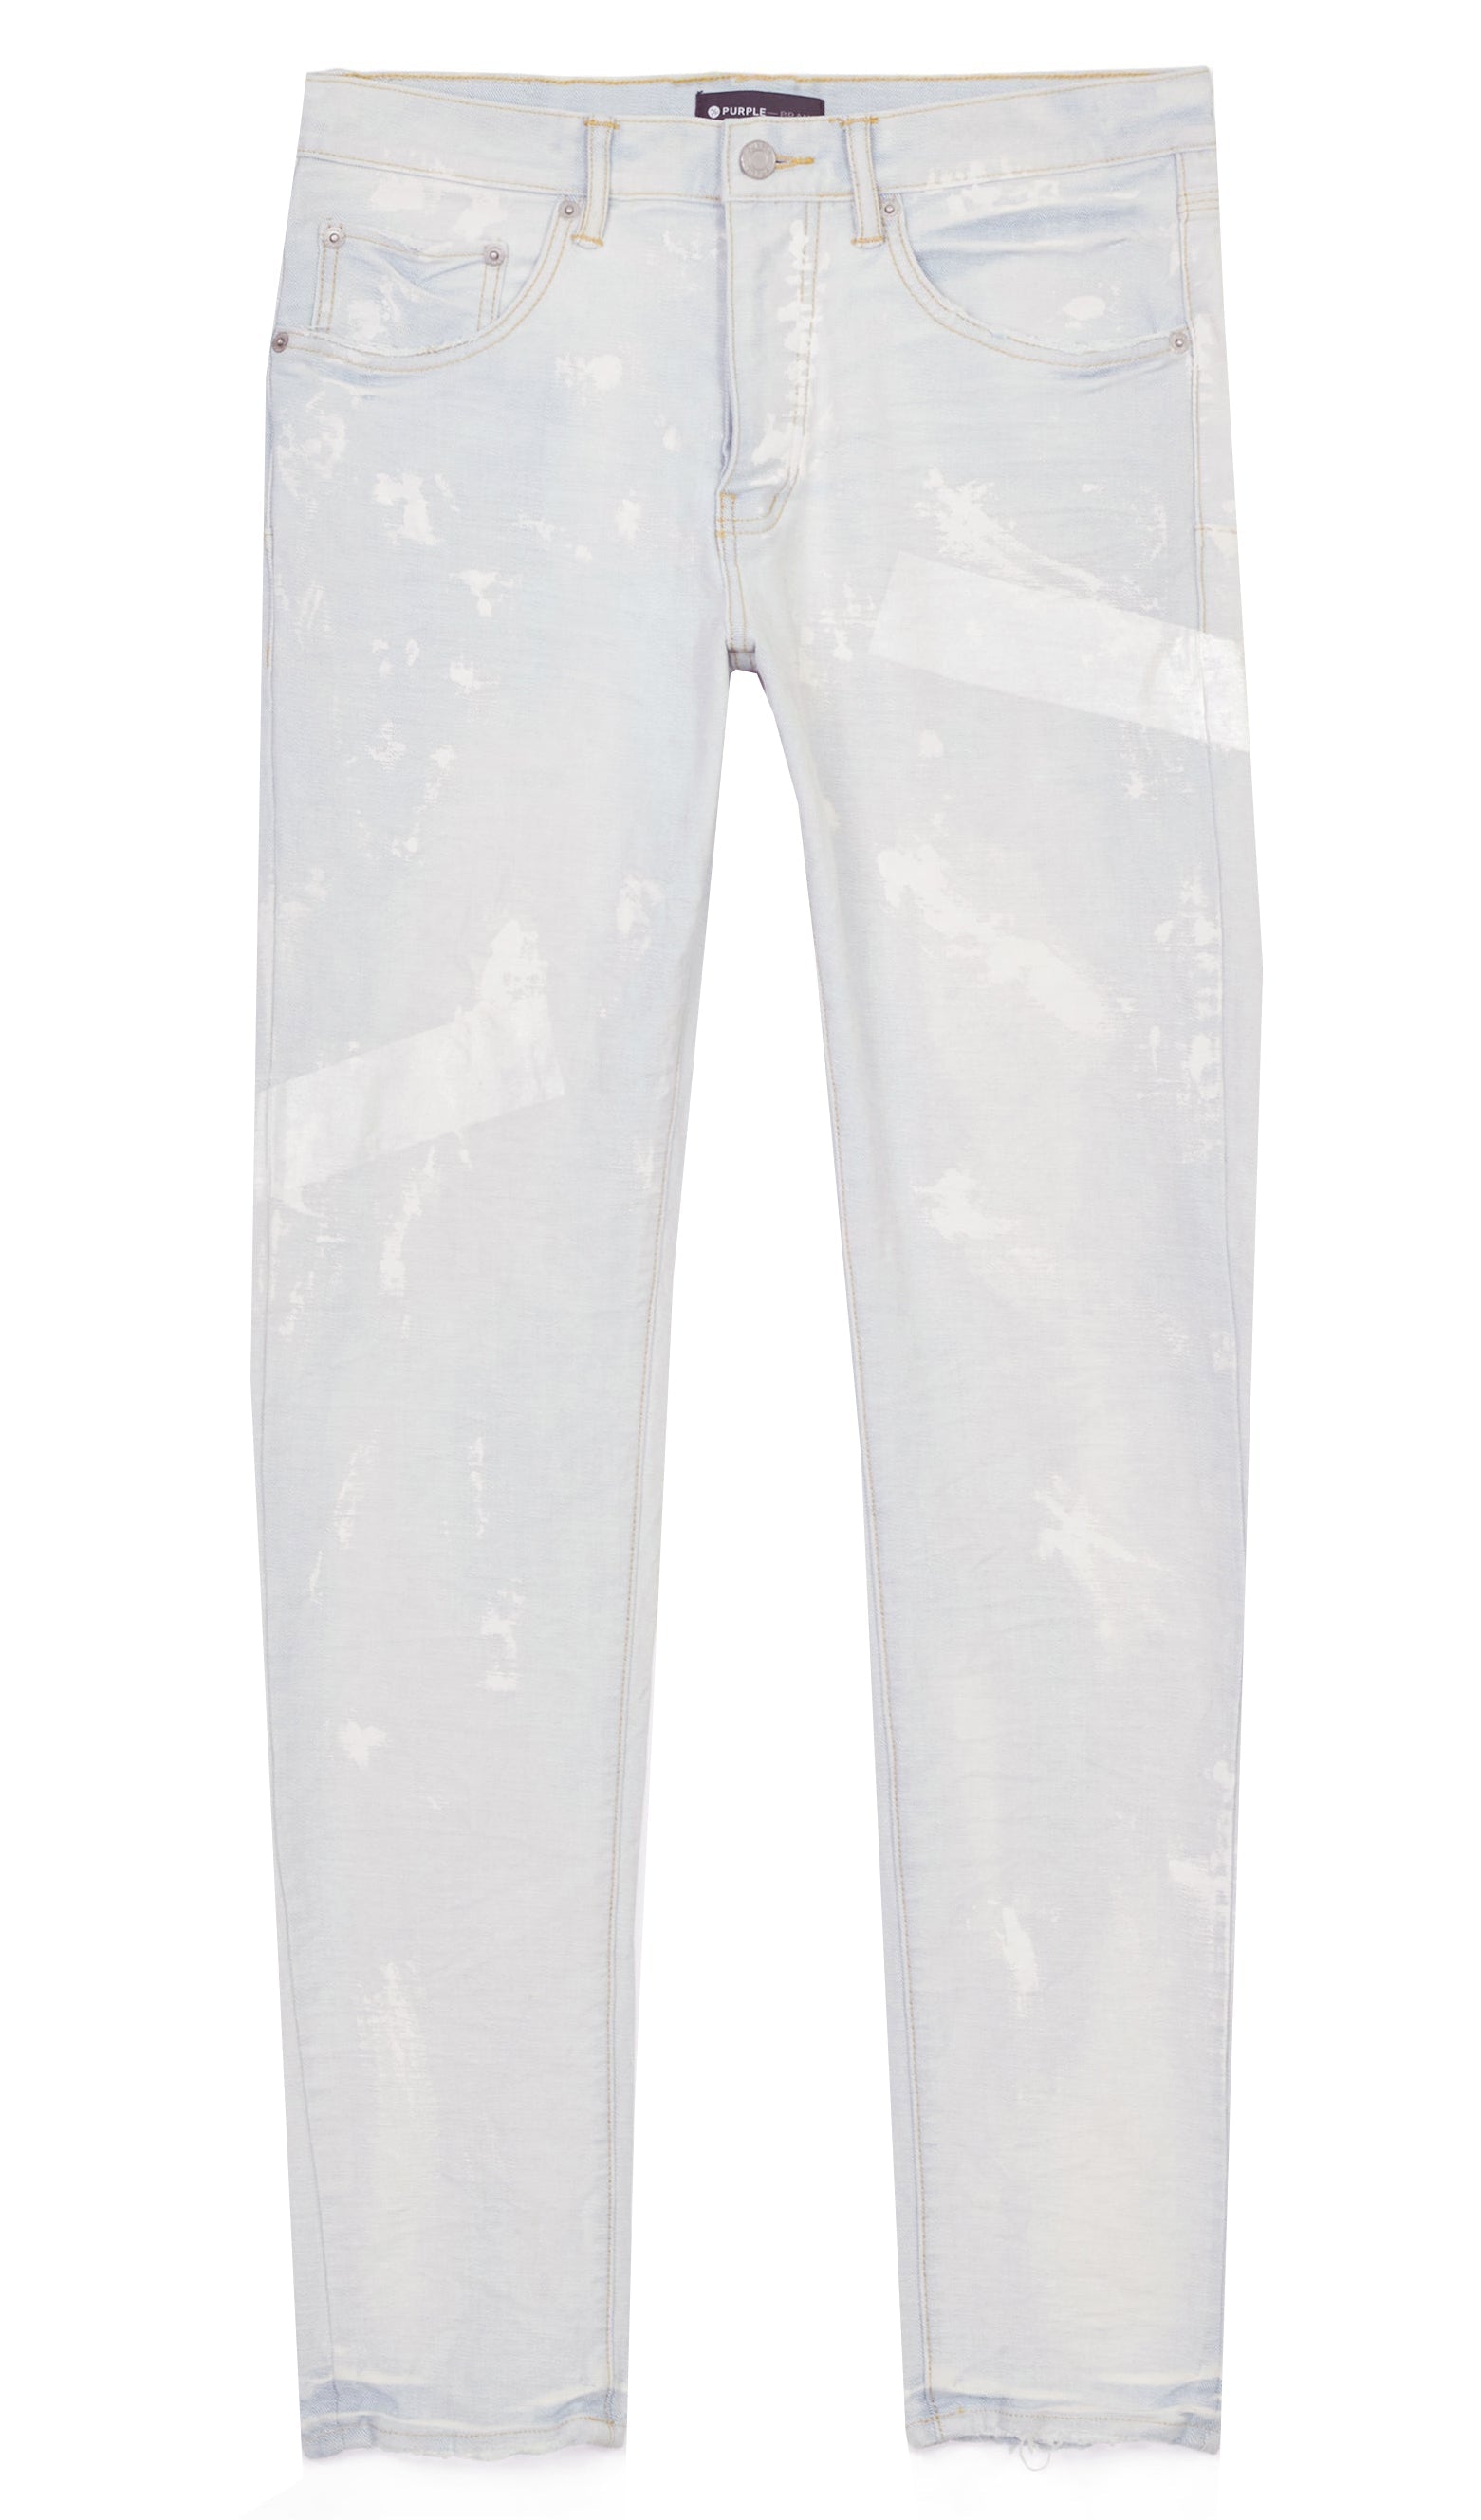 Pantalones vaqueros con pintura reflectante rociada color blanco crema de la marca Purple